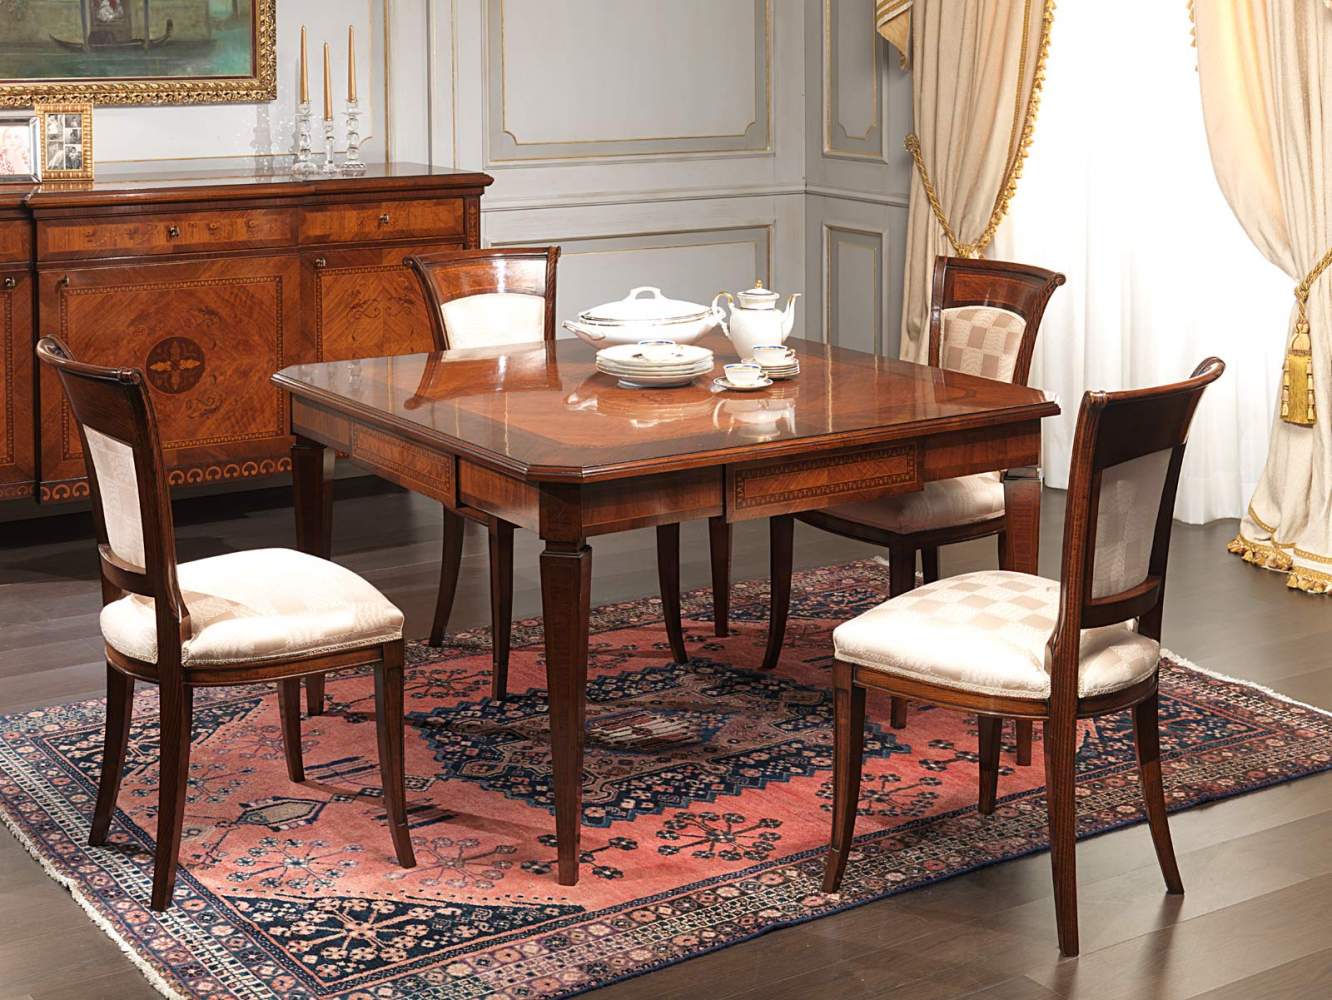 Table style Maggiolini